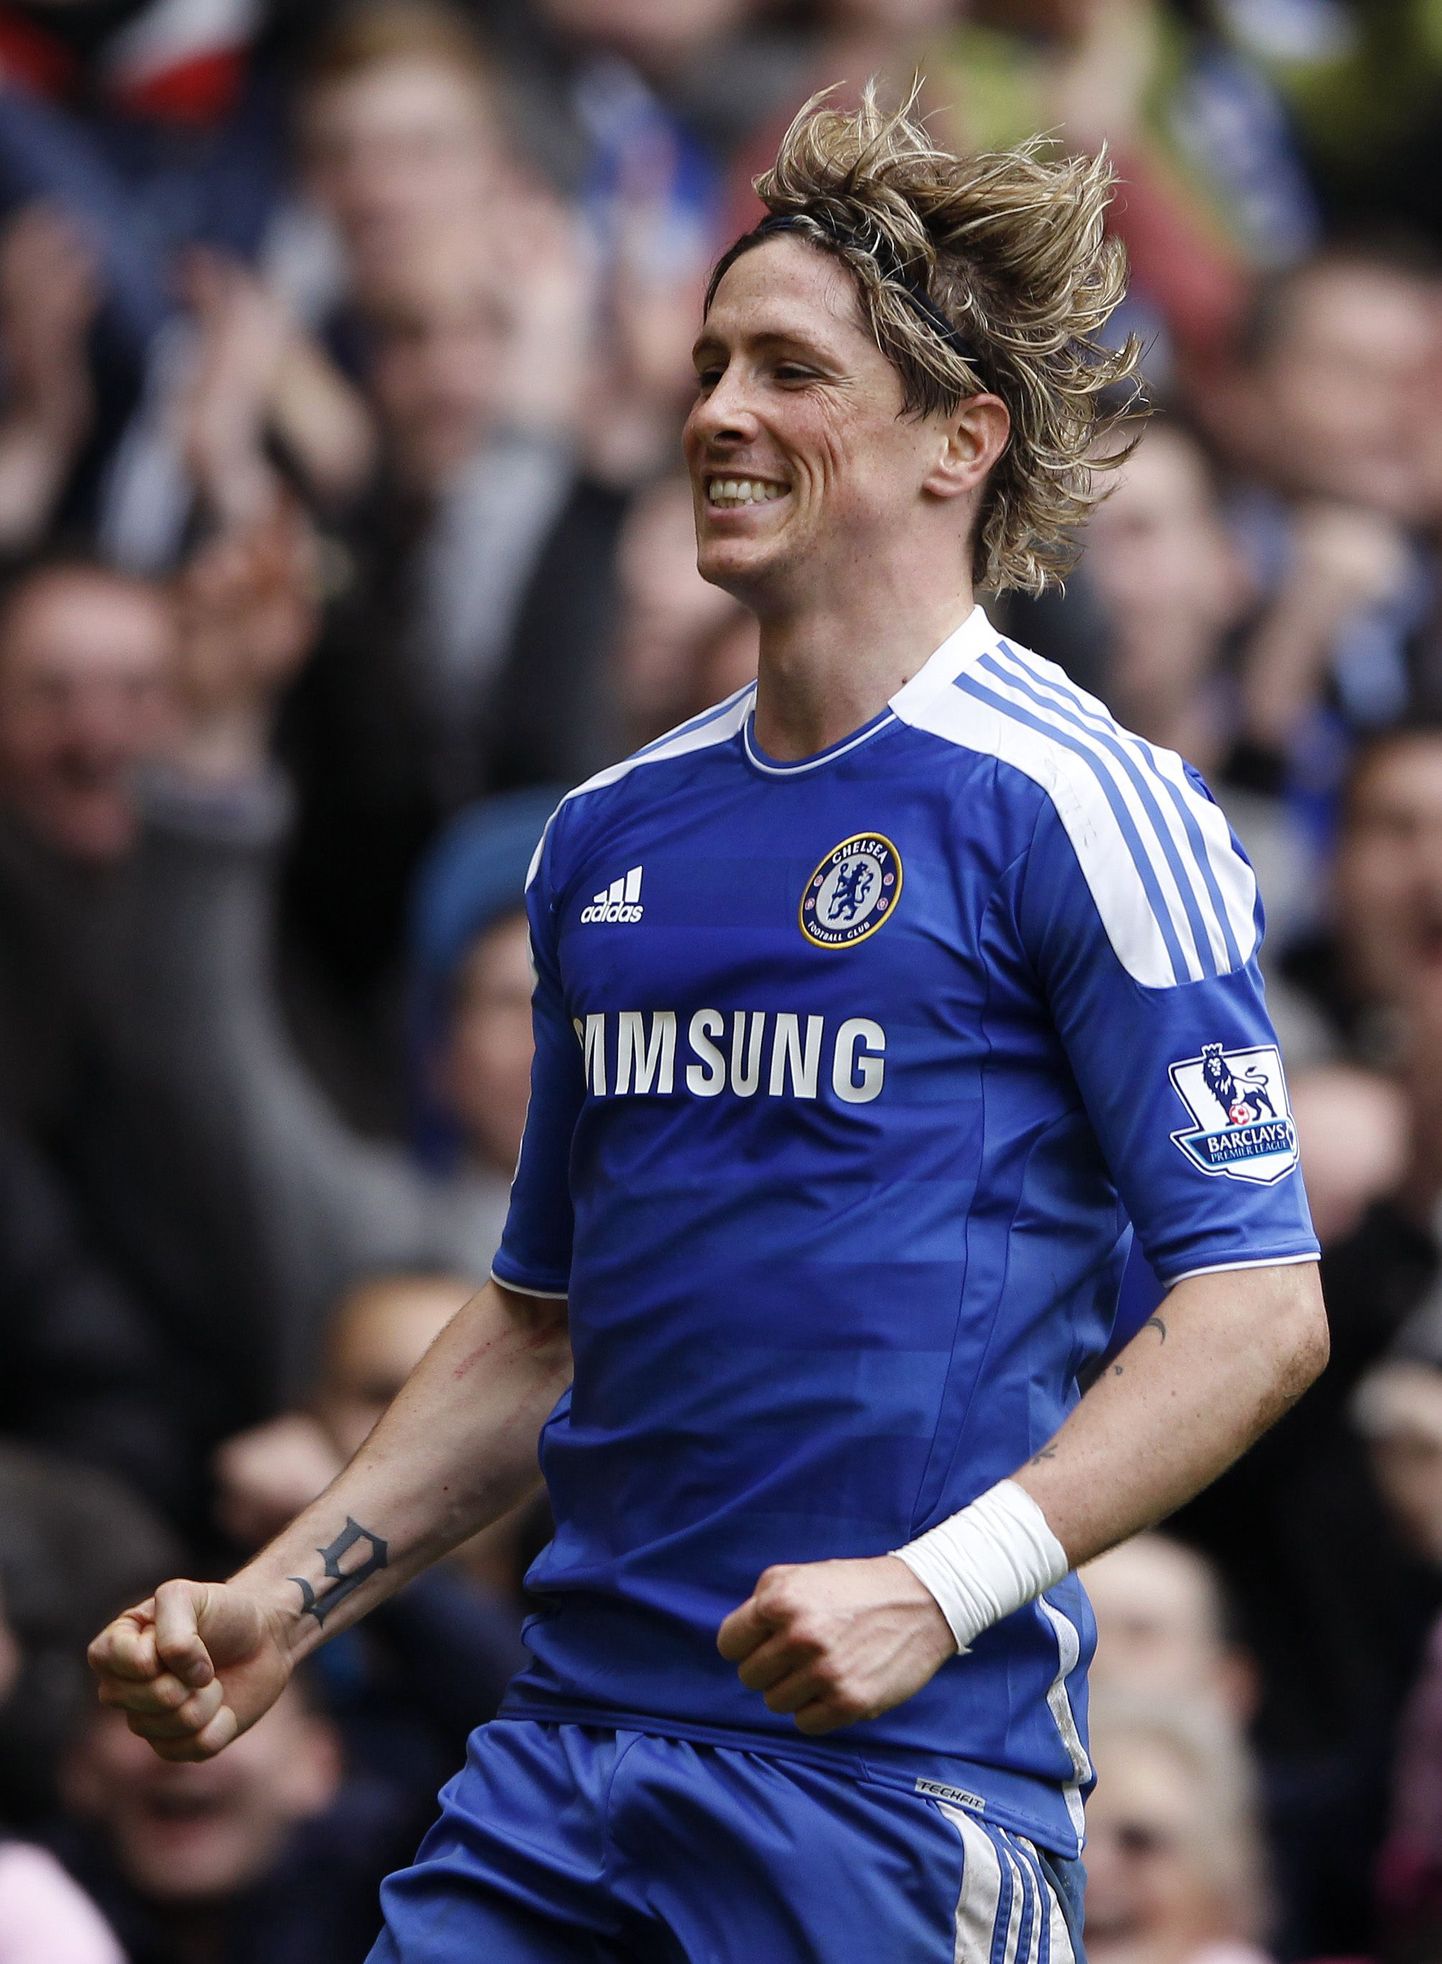 Fernando Torres on teeninud hüüdnime «El Niño» ehk eesti keeles «Laps», mille ta sai Madridi Atleticos mängides, kuna oli väga noorelt meeskonna kapten.